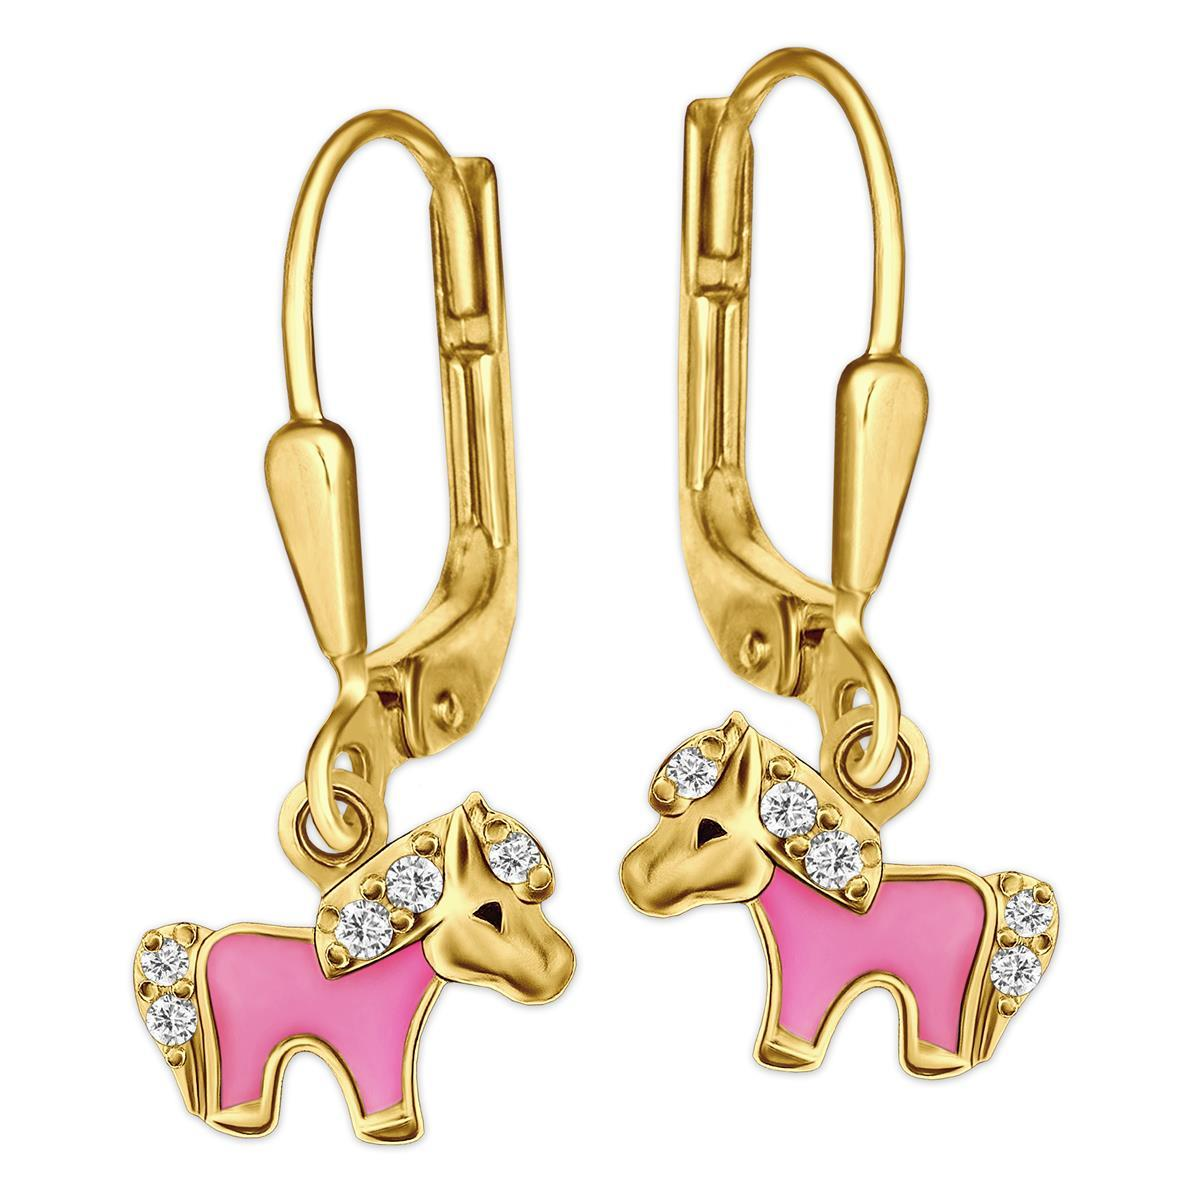 Vergoldete Ohrhänger 20 mm mit Mini Pony teils rosa lackiert mit vielen Zirkonias Sterling Silber 925 gold-plattiert